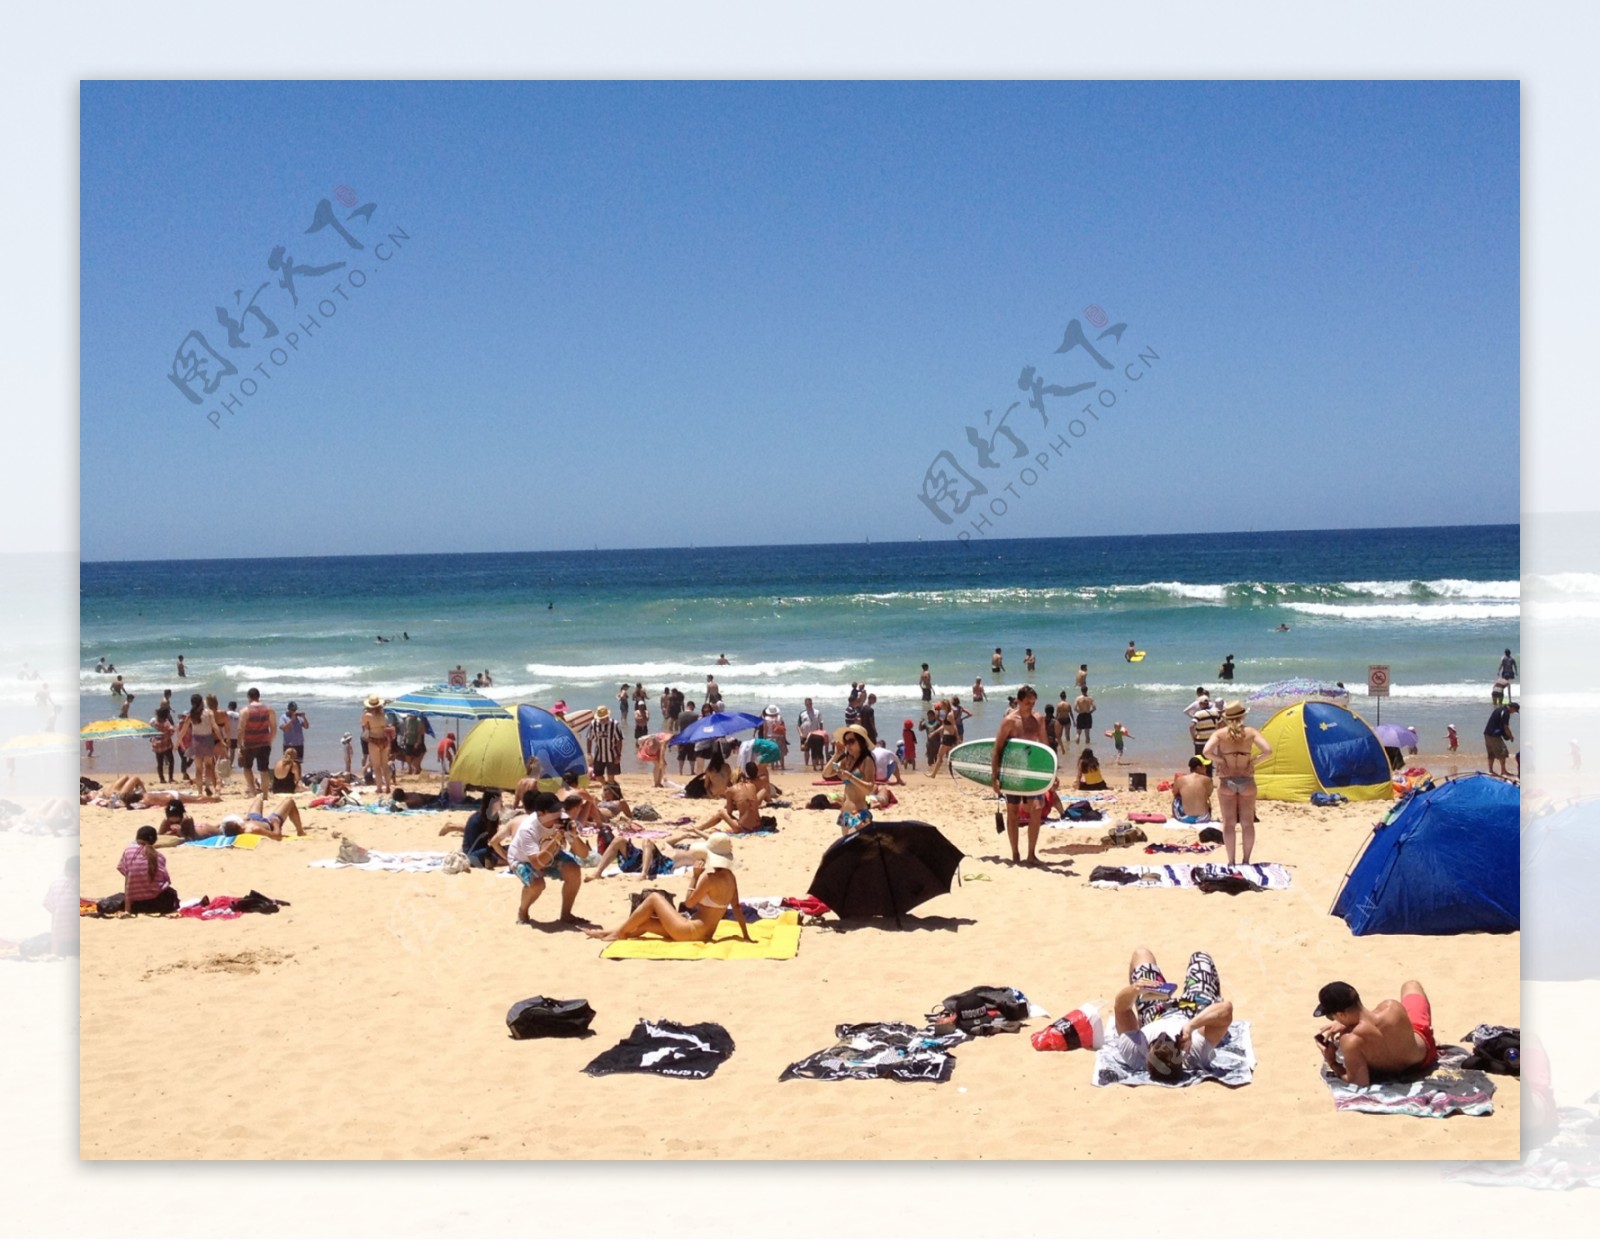 酷热的悉尼manly海滩图片